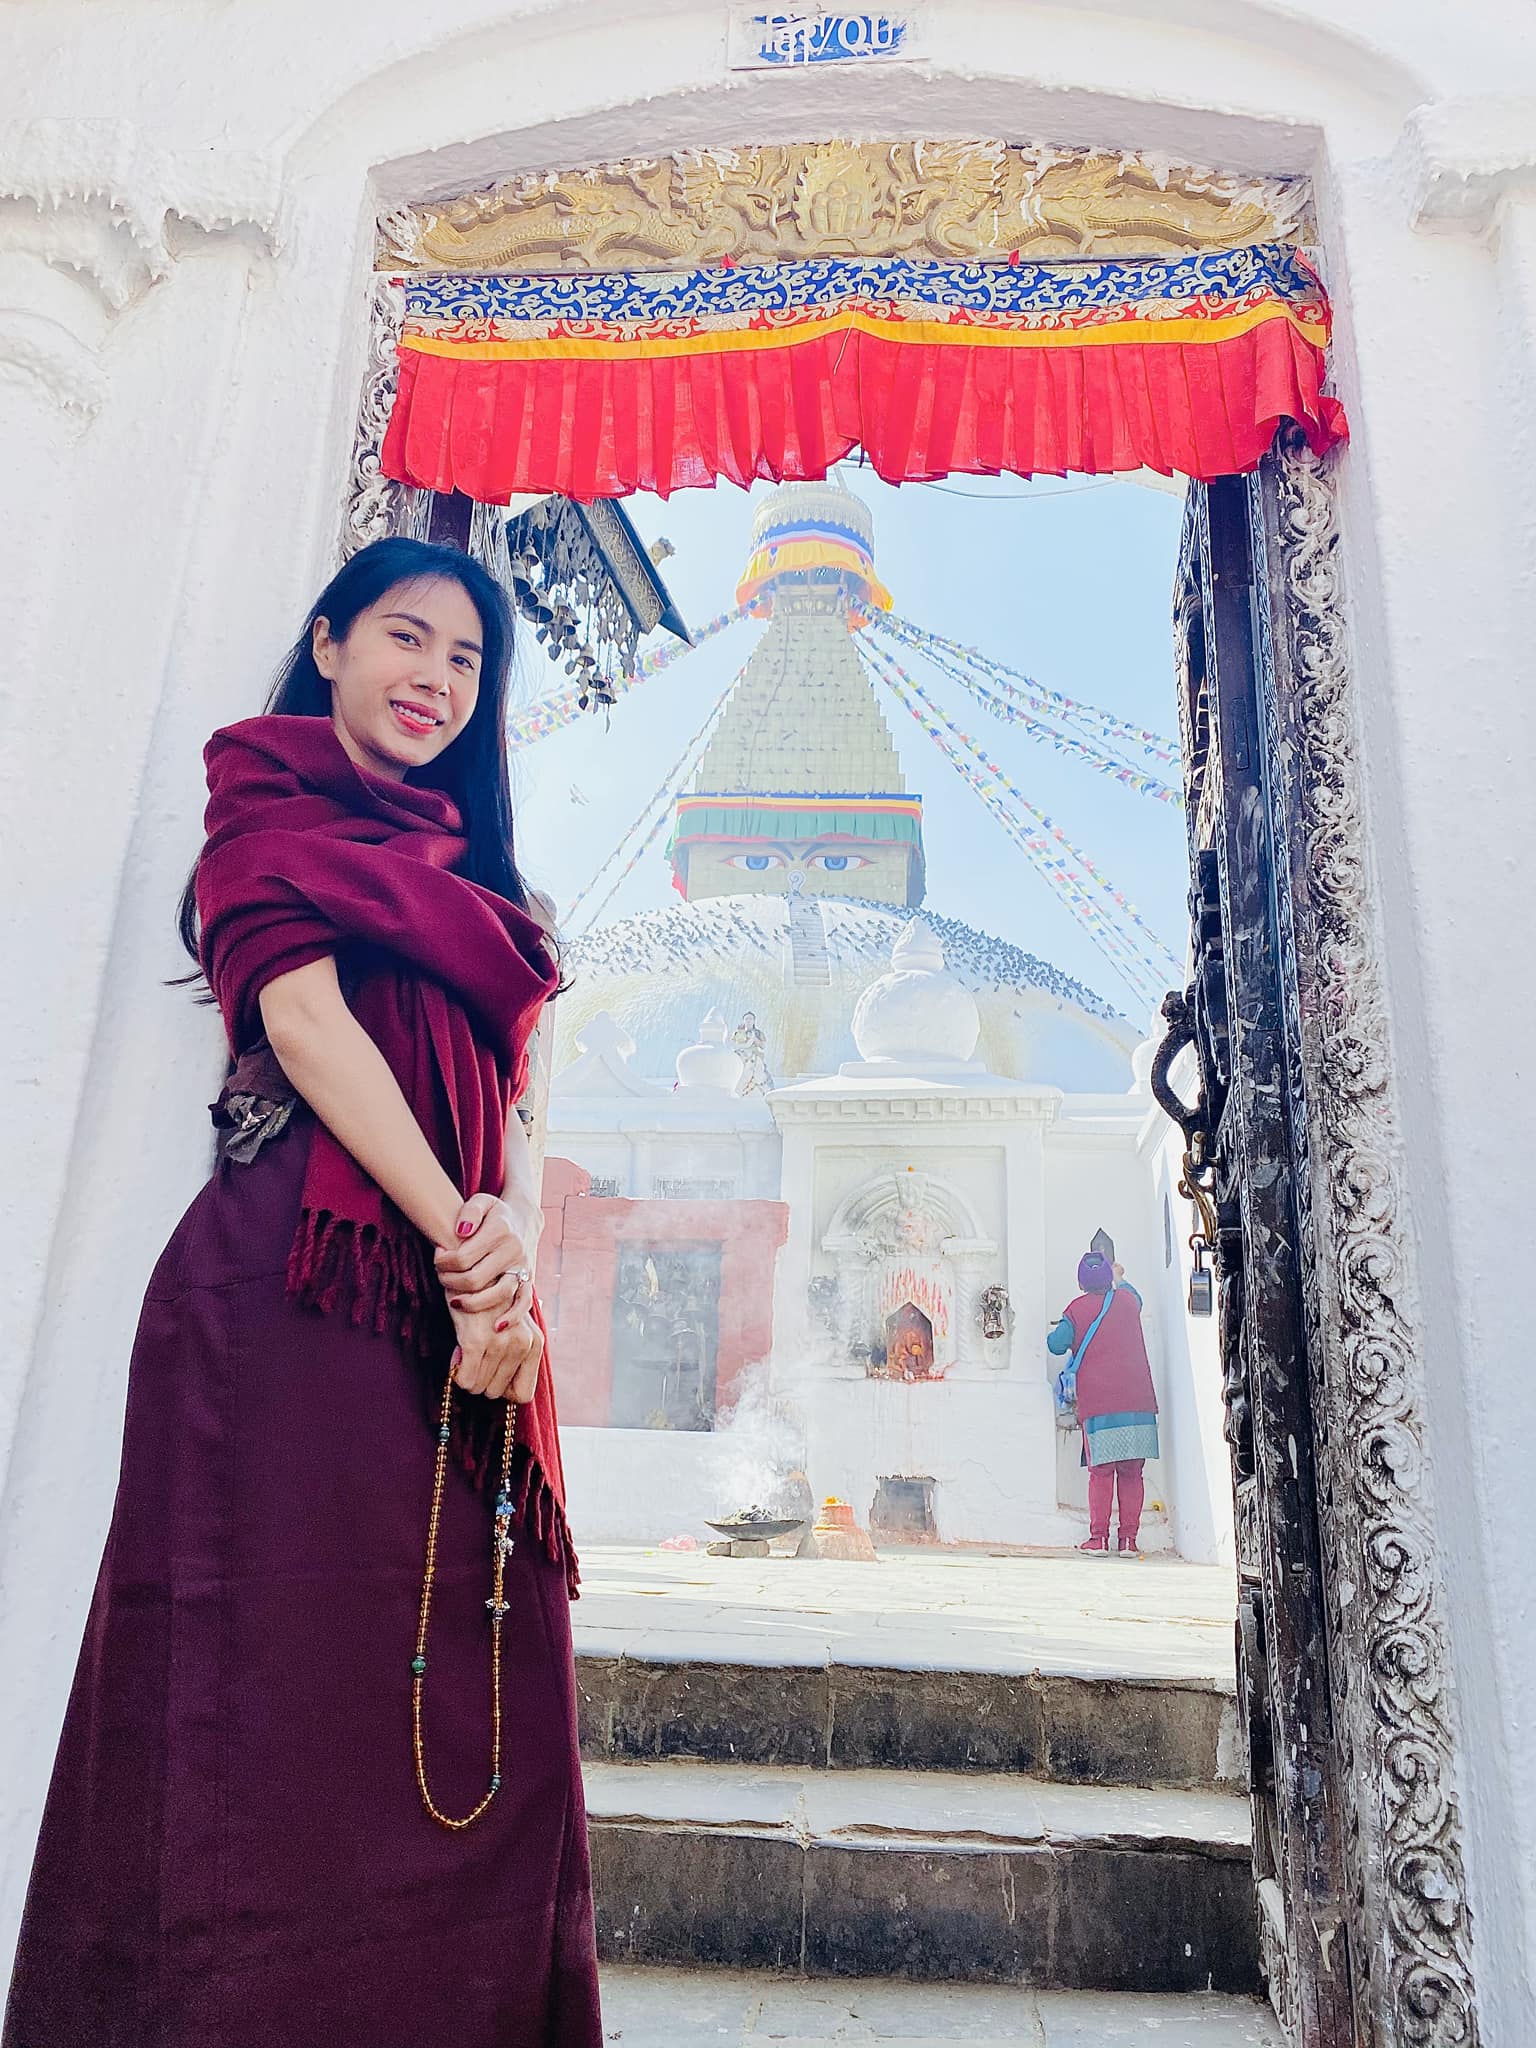 Hành hương Nepal: Là một trong những điểm đến hành hương được yêu thích của người Việt, Nepal tiếp đón du khách bằng những cảnh quan tuyệt đẹp và những món ăn truyền thống độc đáo. Hành trình này sẽ giúp bạn tìm lại sự bình yên và động lực cho cuộc sống hiện tại.